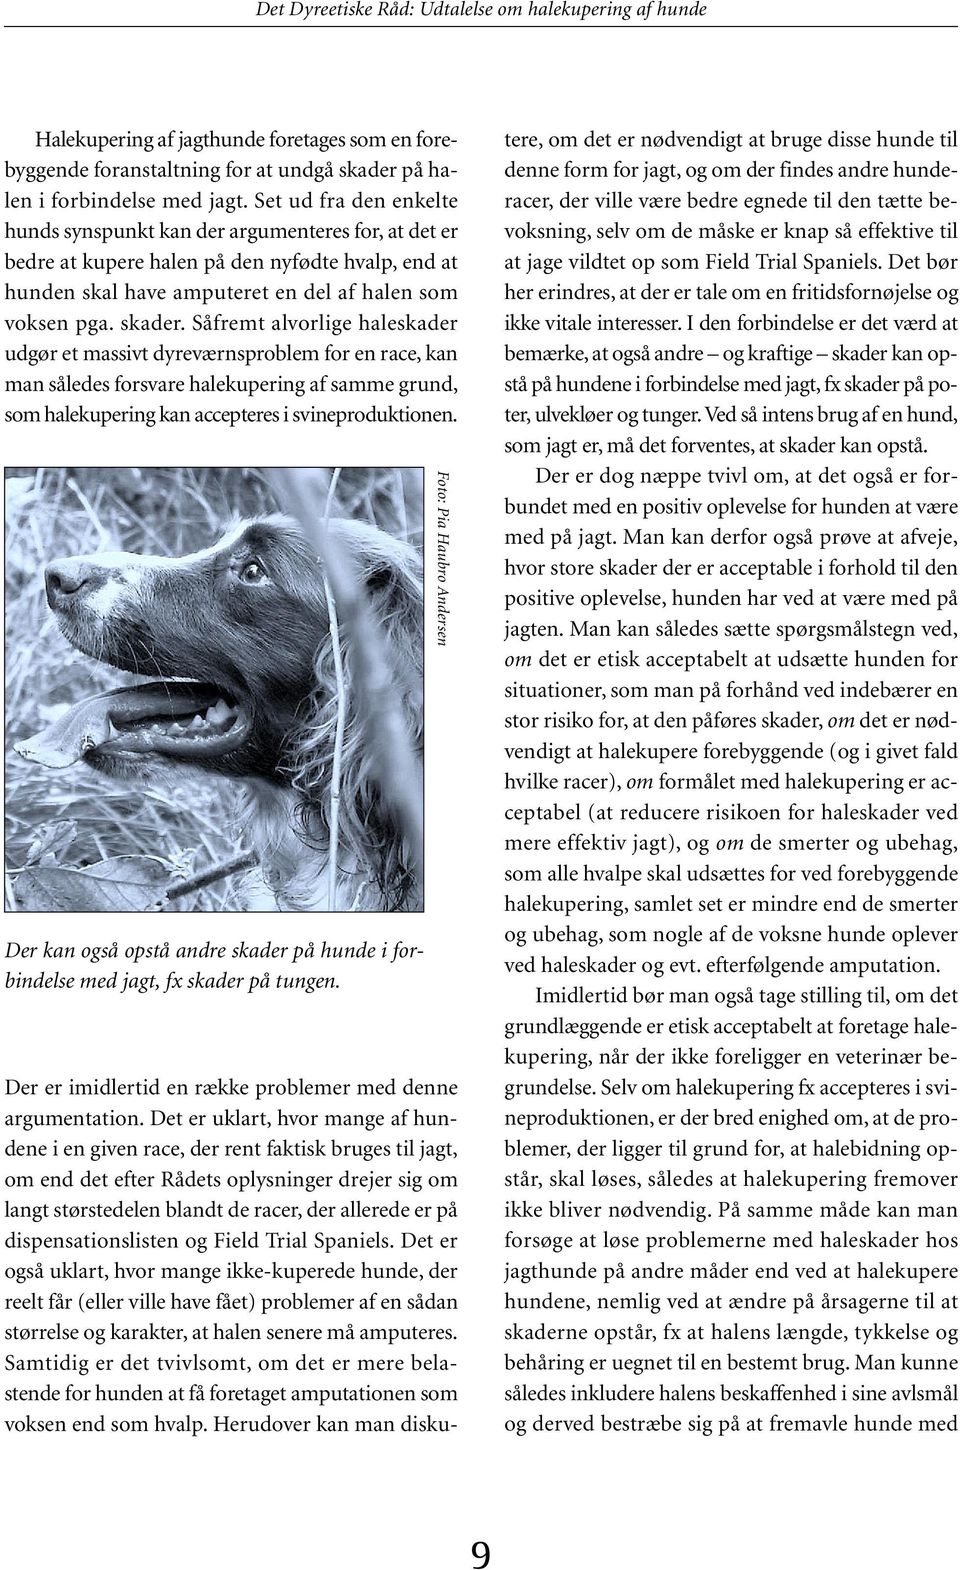 Det Dyreetiske Råd. Udtalelse om halekupering af hunde - PDF Gratis download